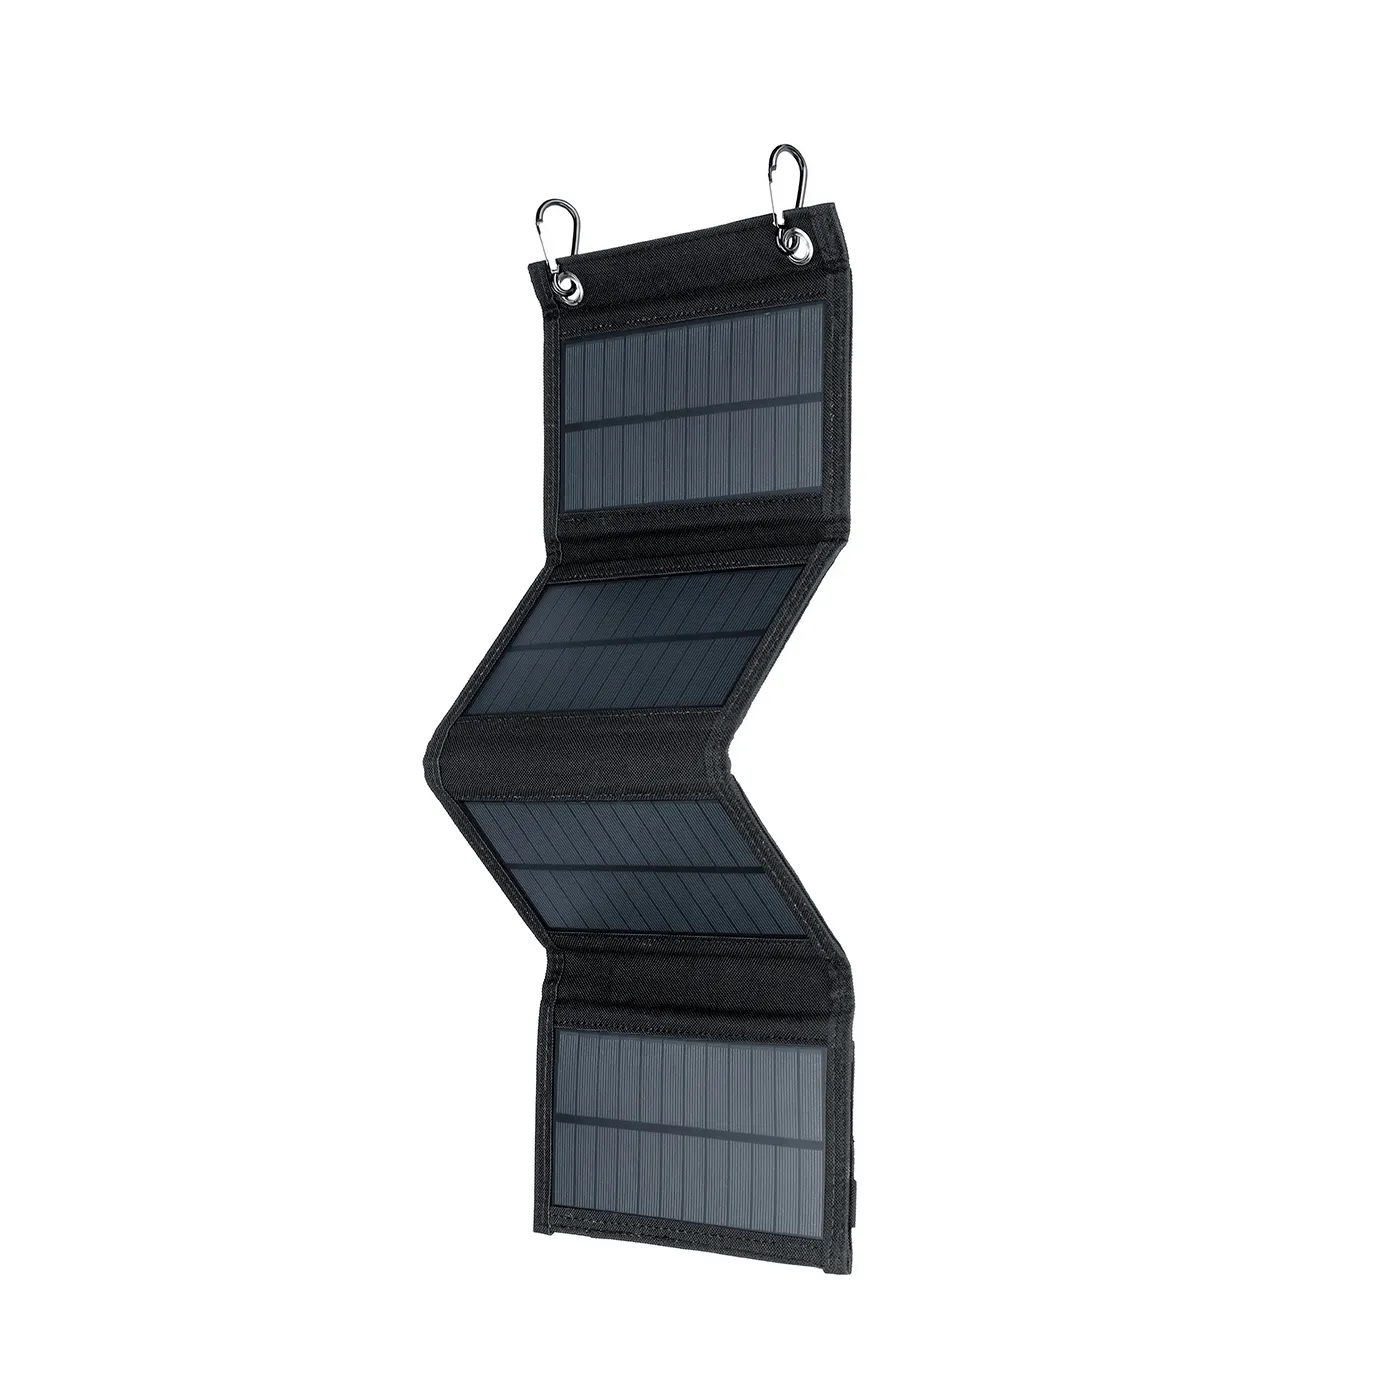 Novo estoque preto com oferta especial alta eficiente 10W portátil sunpower flexível painel solar carregador para acampar